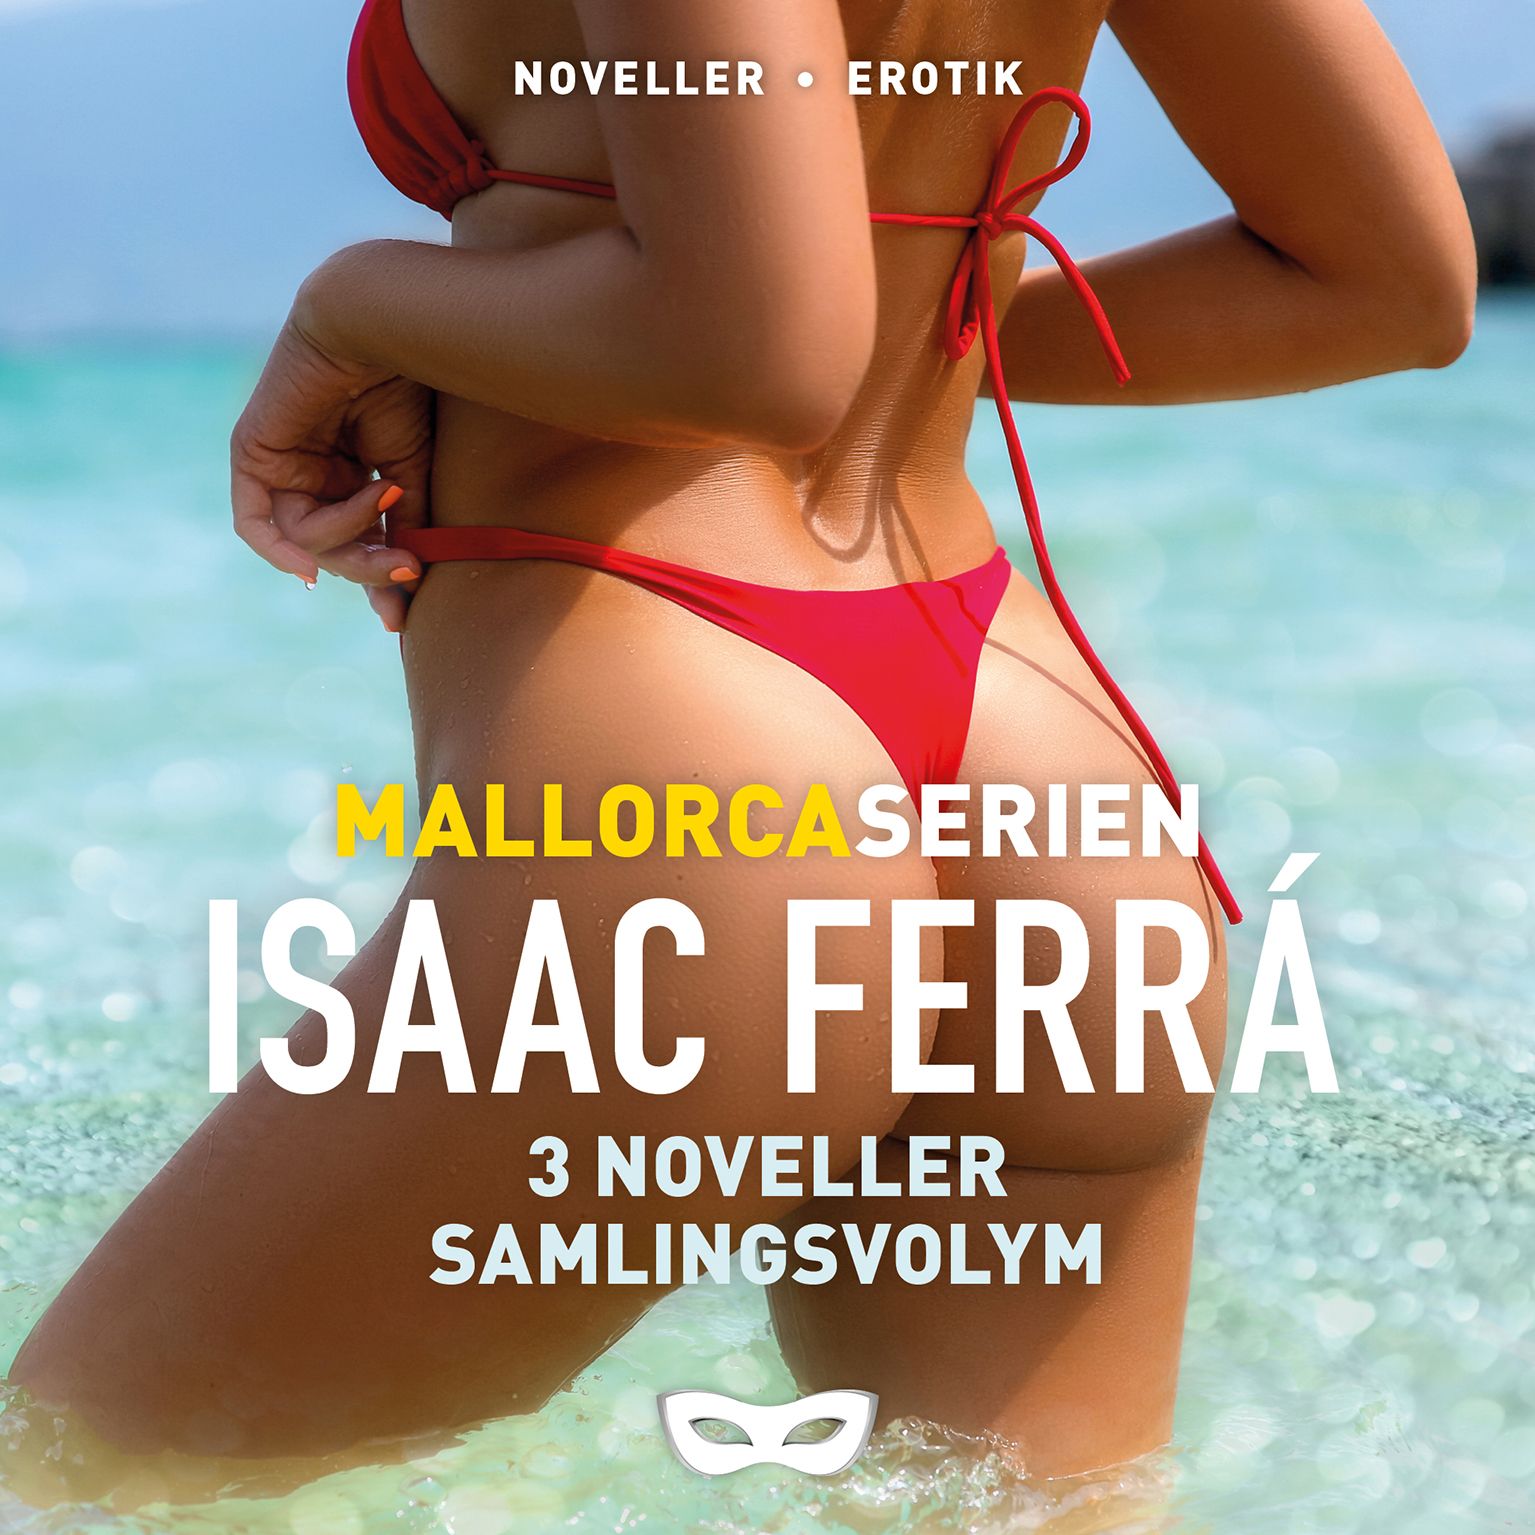 Mallorcaserien 3 noveller (samlingsvolym), lydbog af Isaac Ferrá